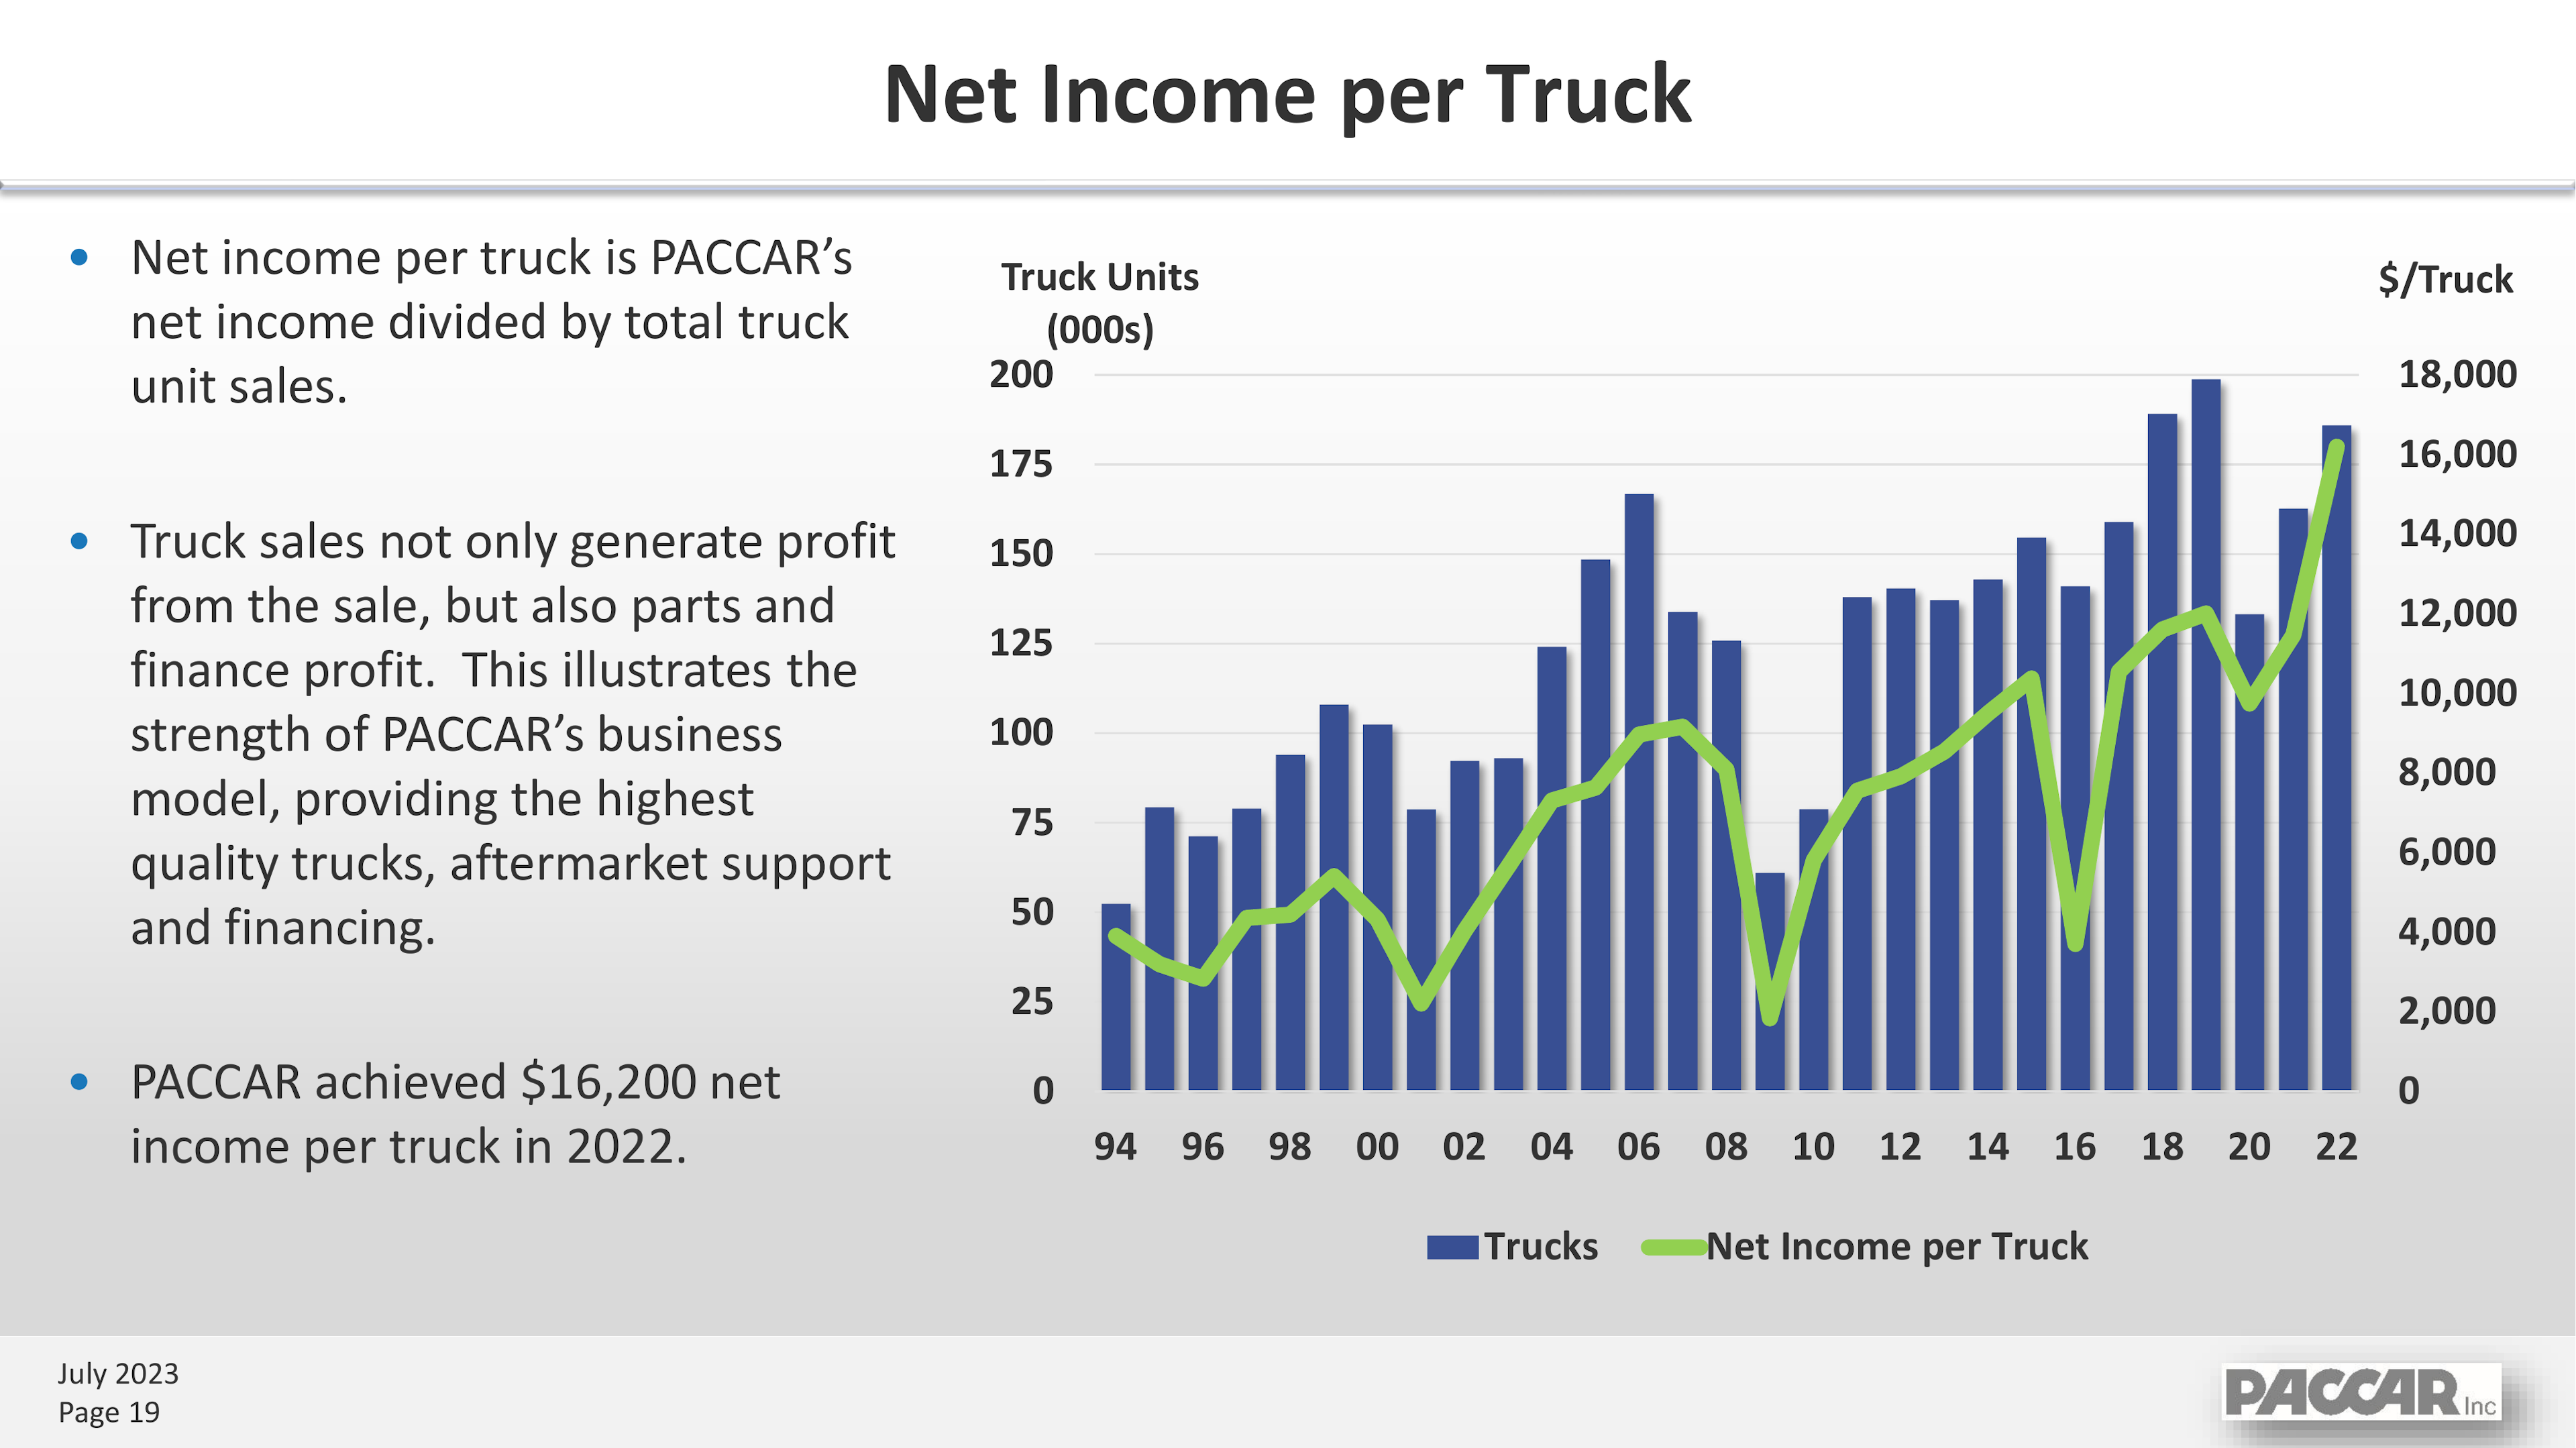 Net income per truck